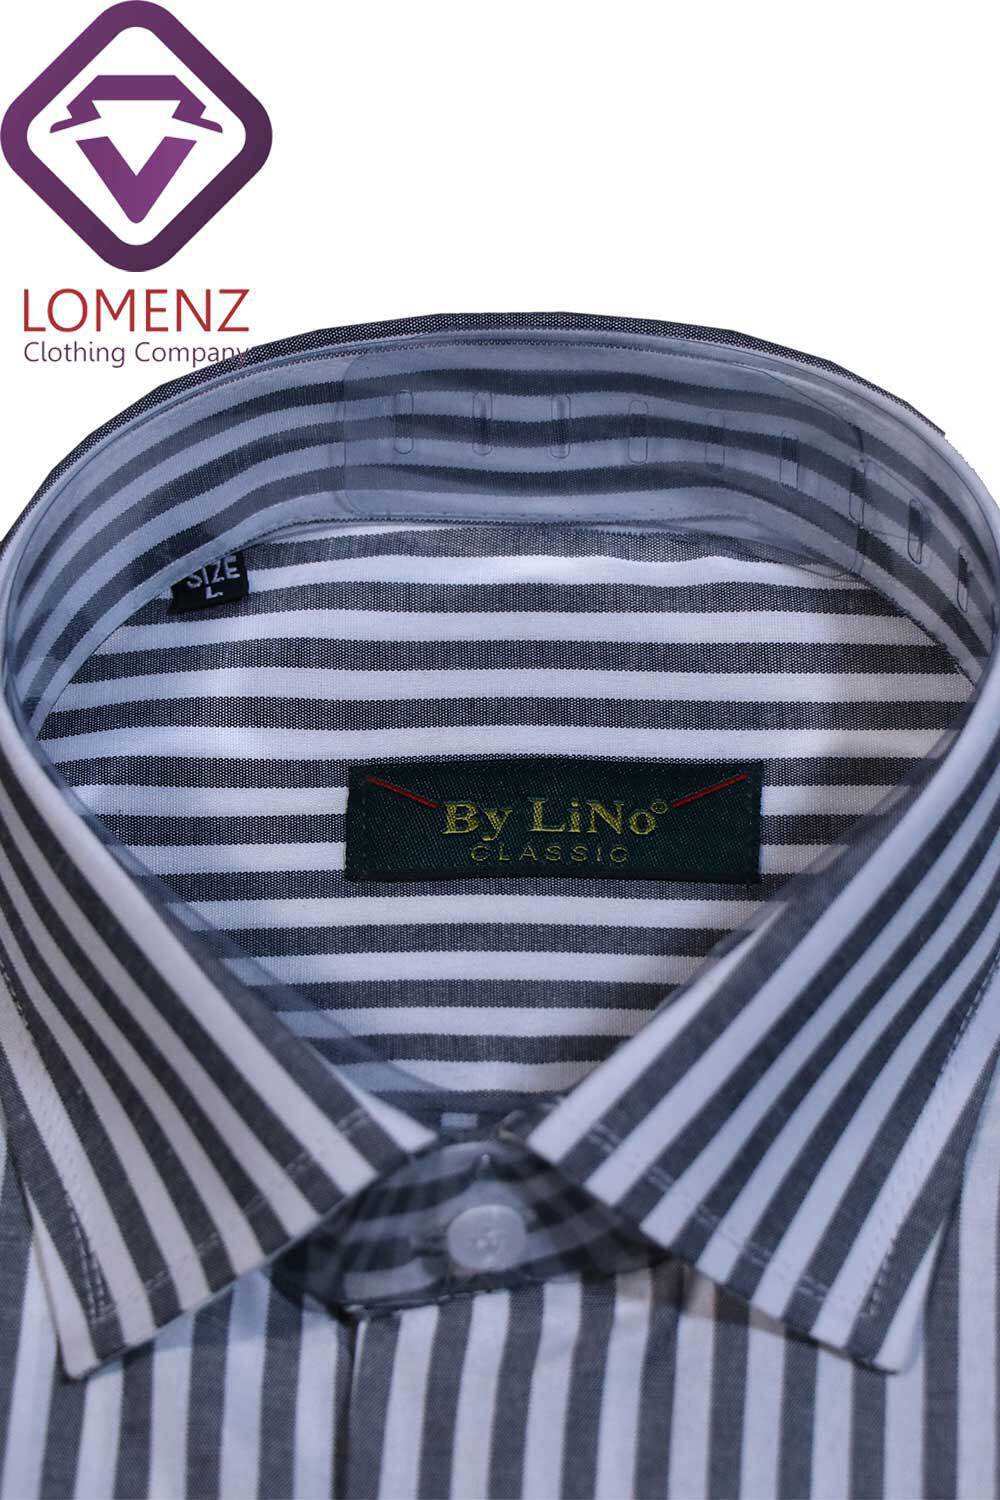  پیراهن جعبه ای Diplomat برند By Lino 